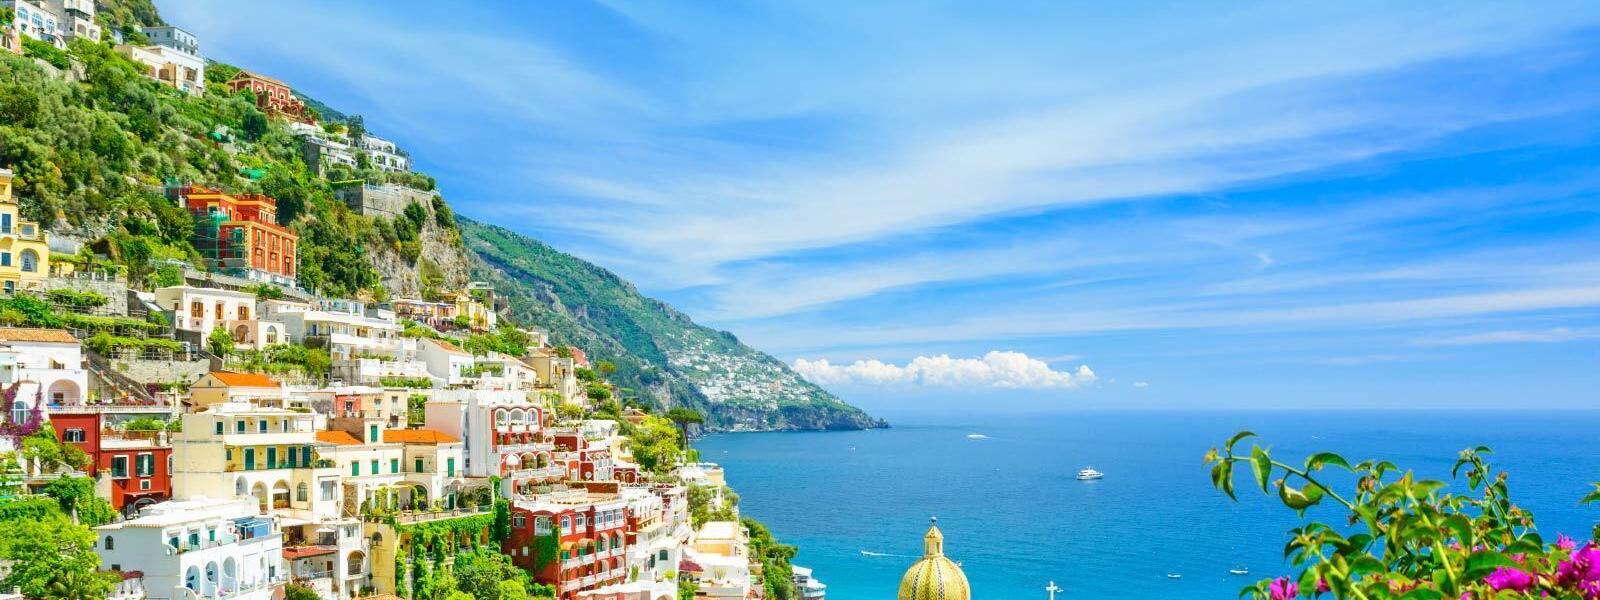 Ferienwohnungen und Ferienhäuser in den italienischen Alpen - e-domizil